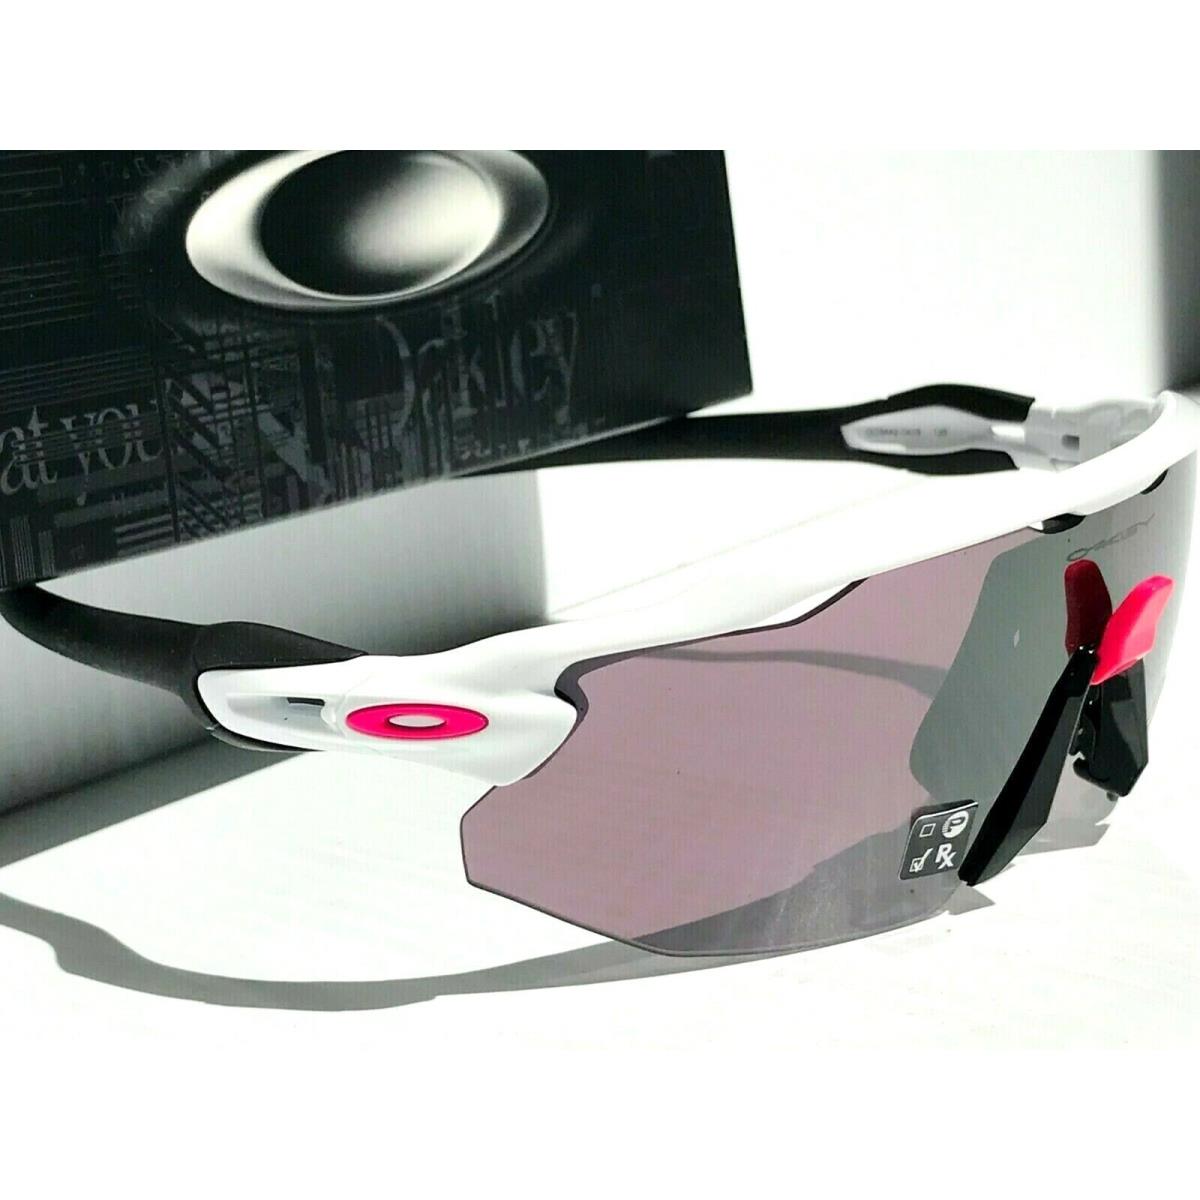 Oakley sunglasses Radar Advancer - White Frame, Road Black Lens